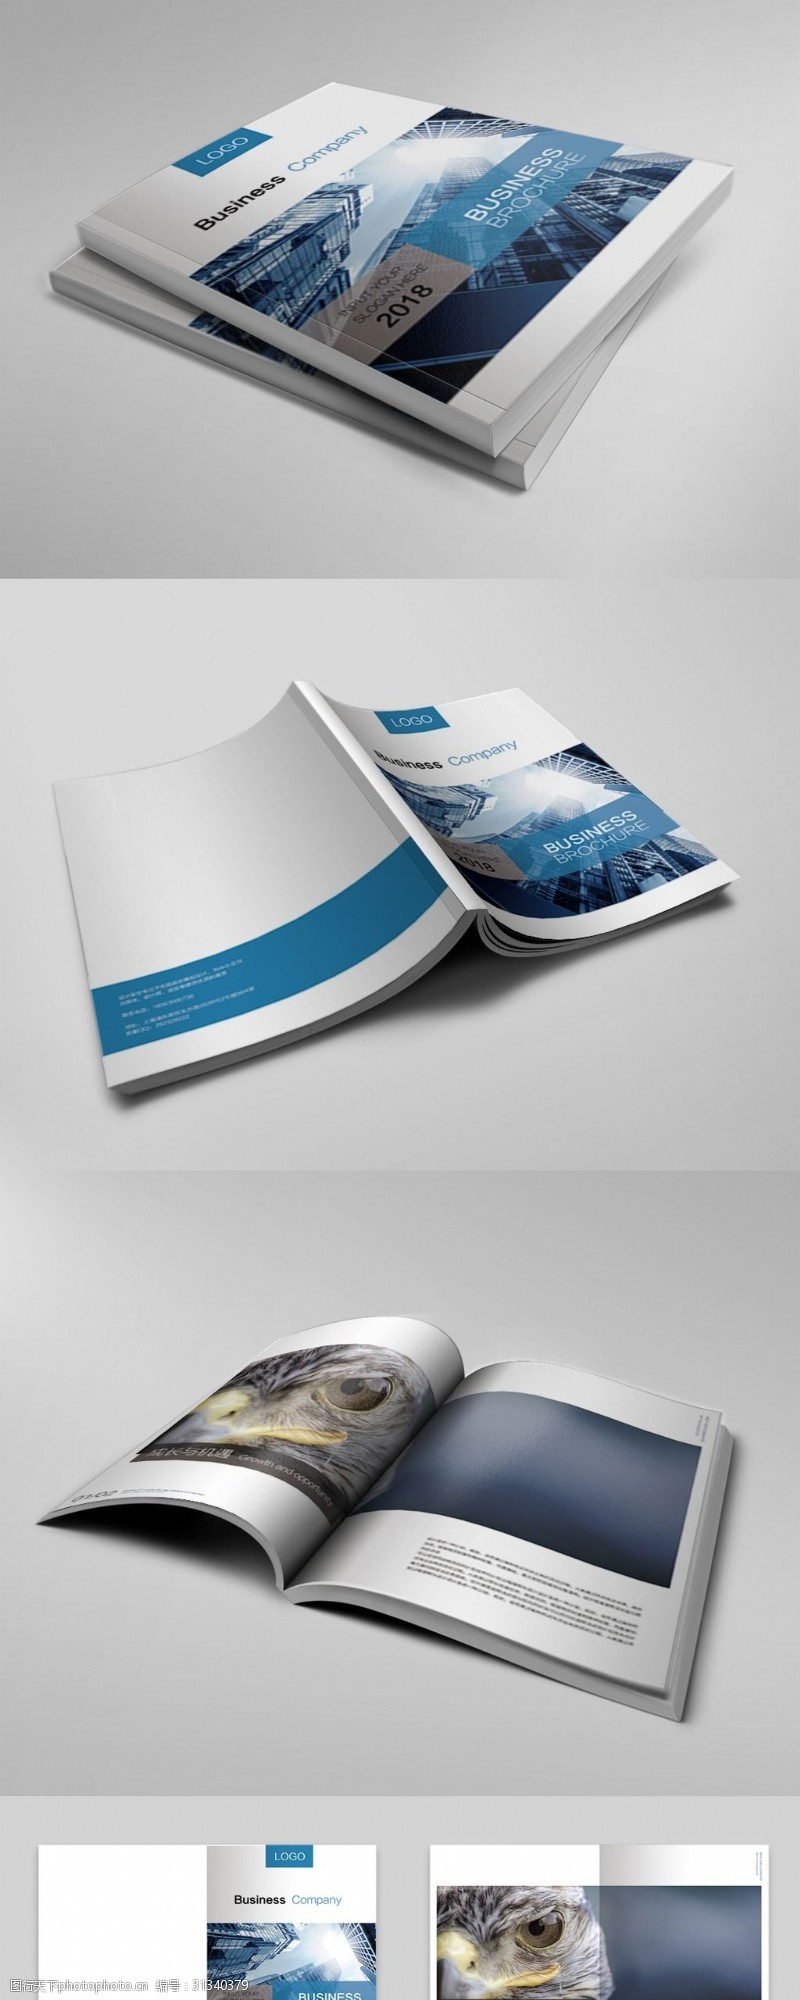 企业文化形象展示宣传画册设计